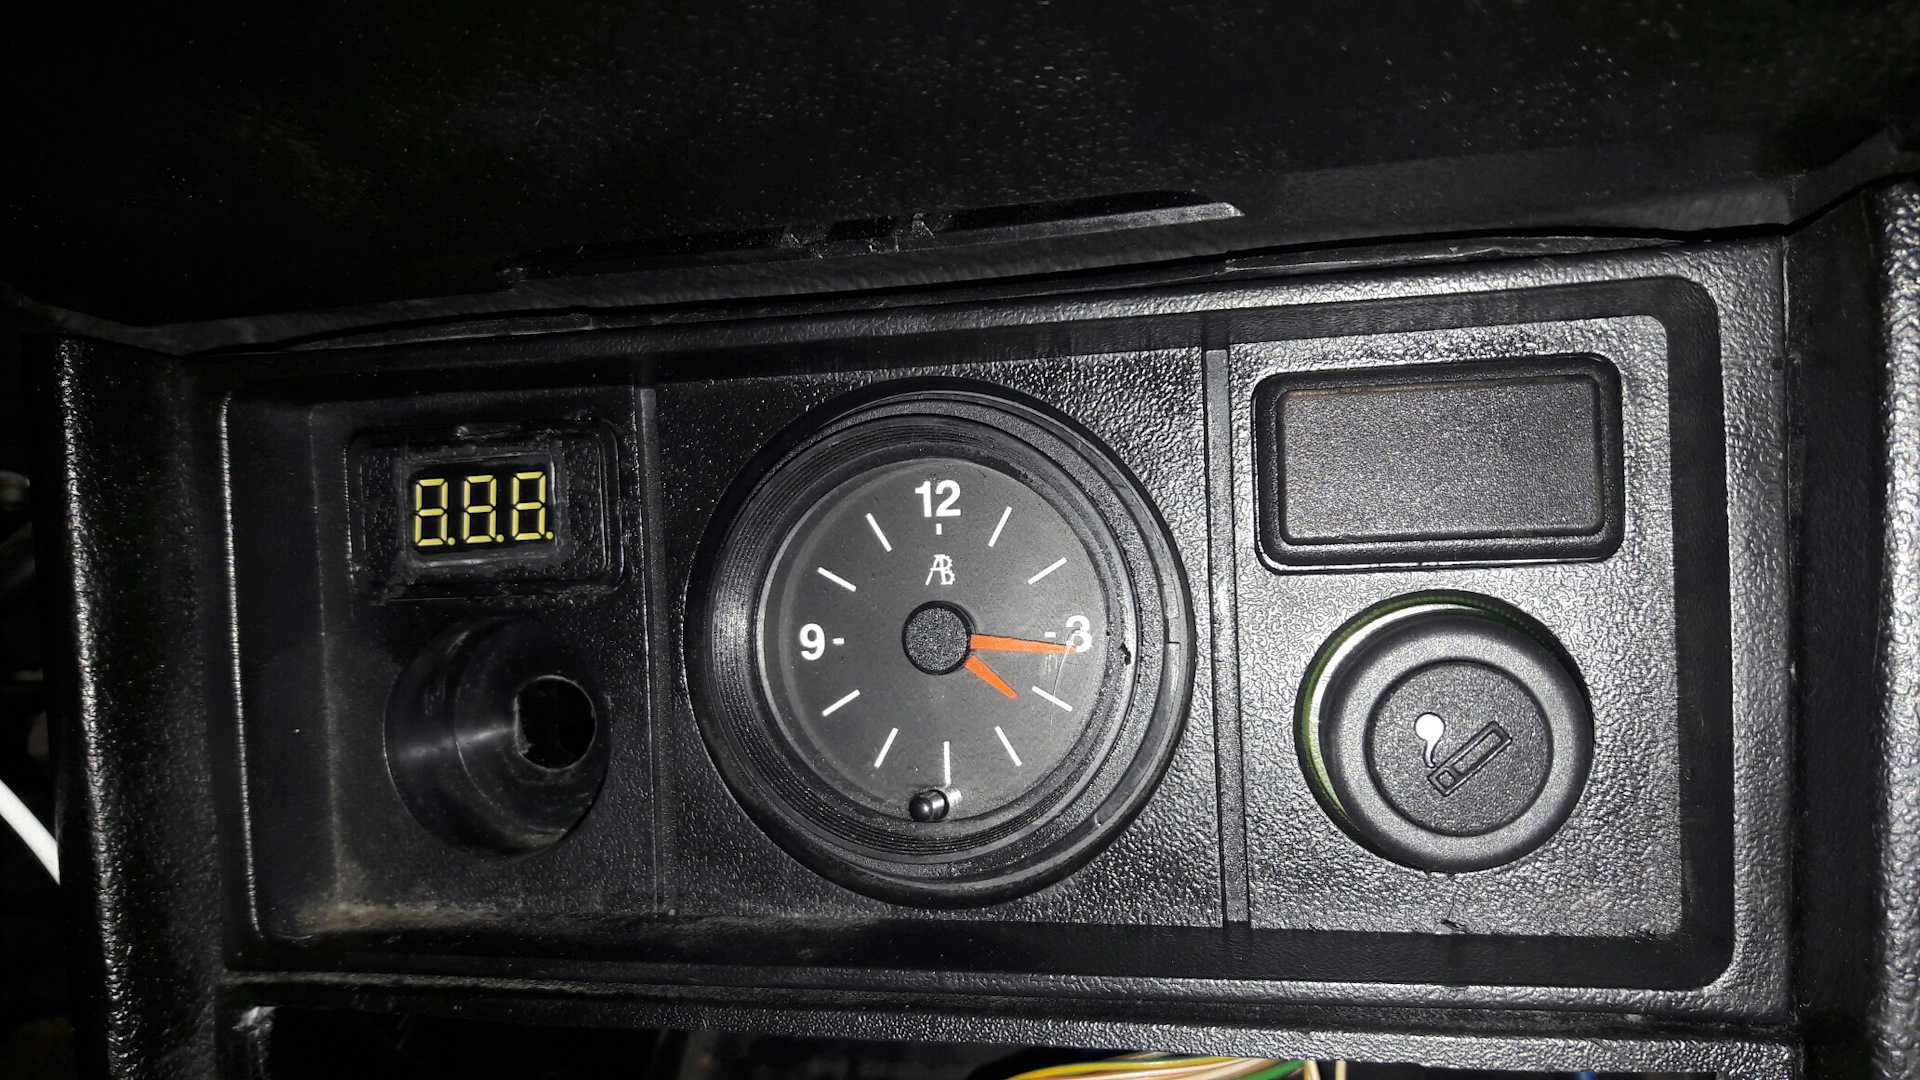 Прикуриватель ВАЗ 2105. USB прикуриватель в ВАЗ 2105. Зарядка в прикуриватель ВАЗ 2107. Зарядка в место прикуриватель ВАЗ 2105.